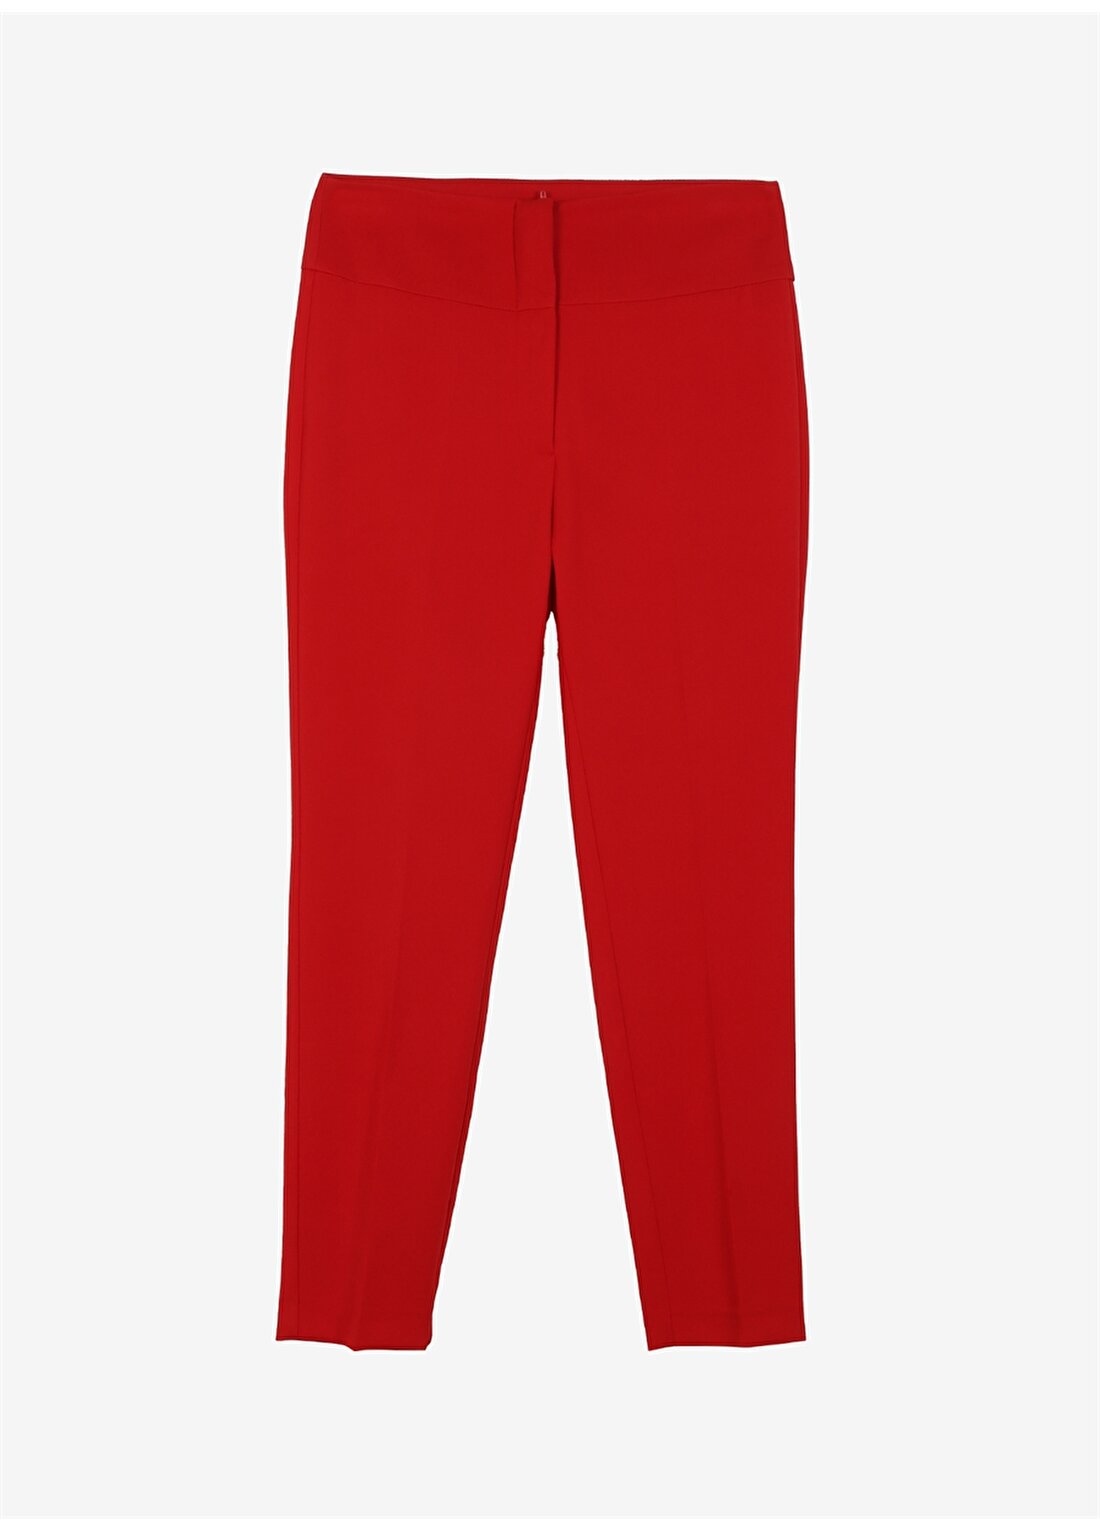 Selen Normal Bel Standart Kırmızı Kadın Pantolon 23YSL5002